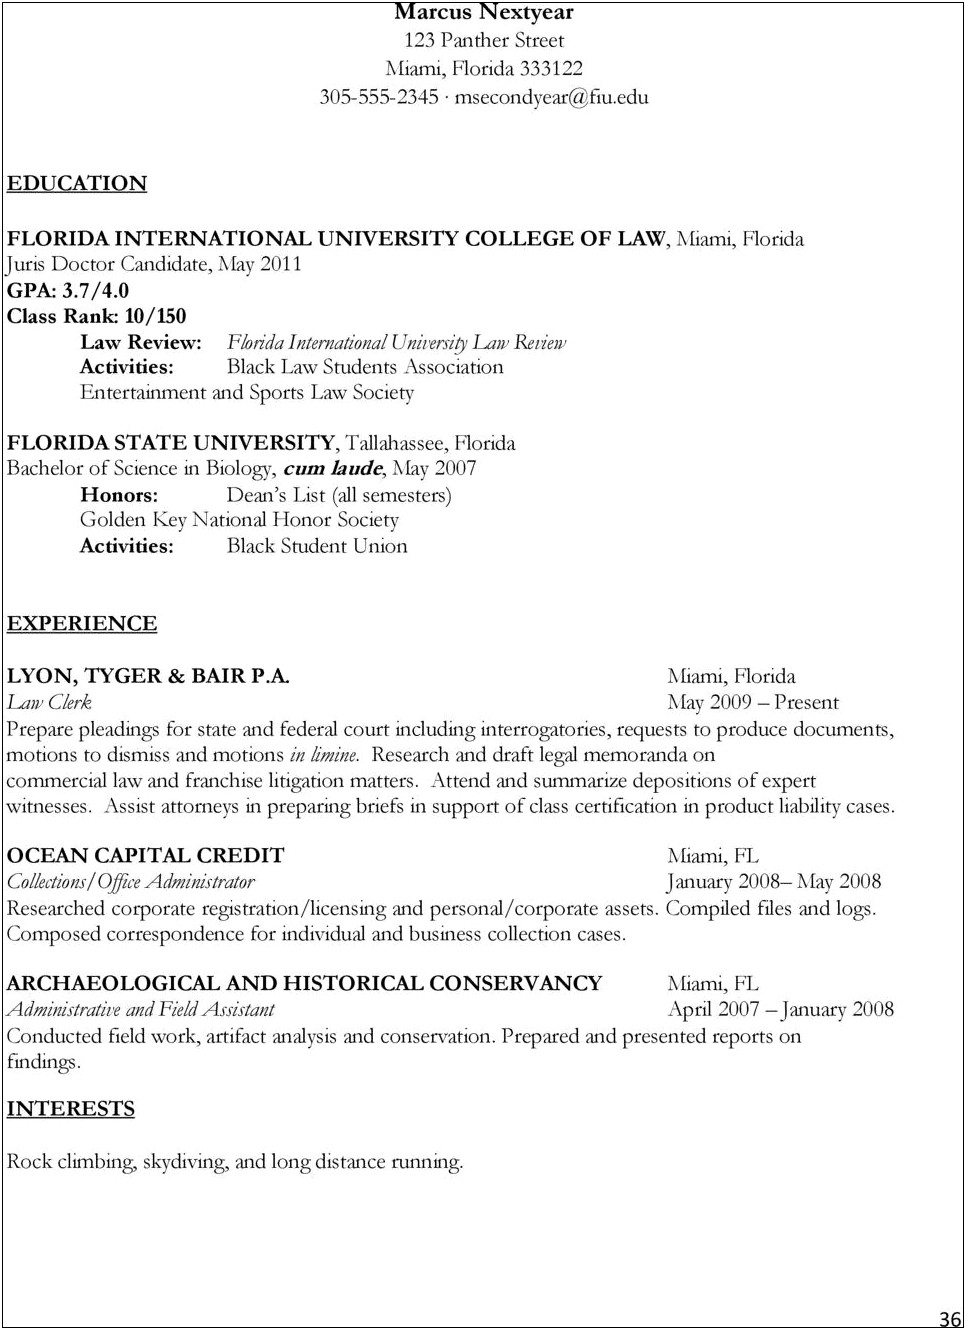 Sample Resume For Law Clerk Interrogatories